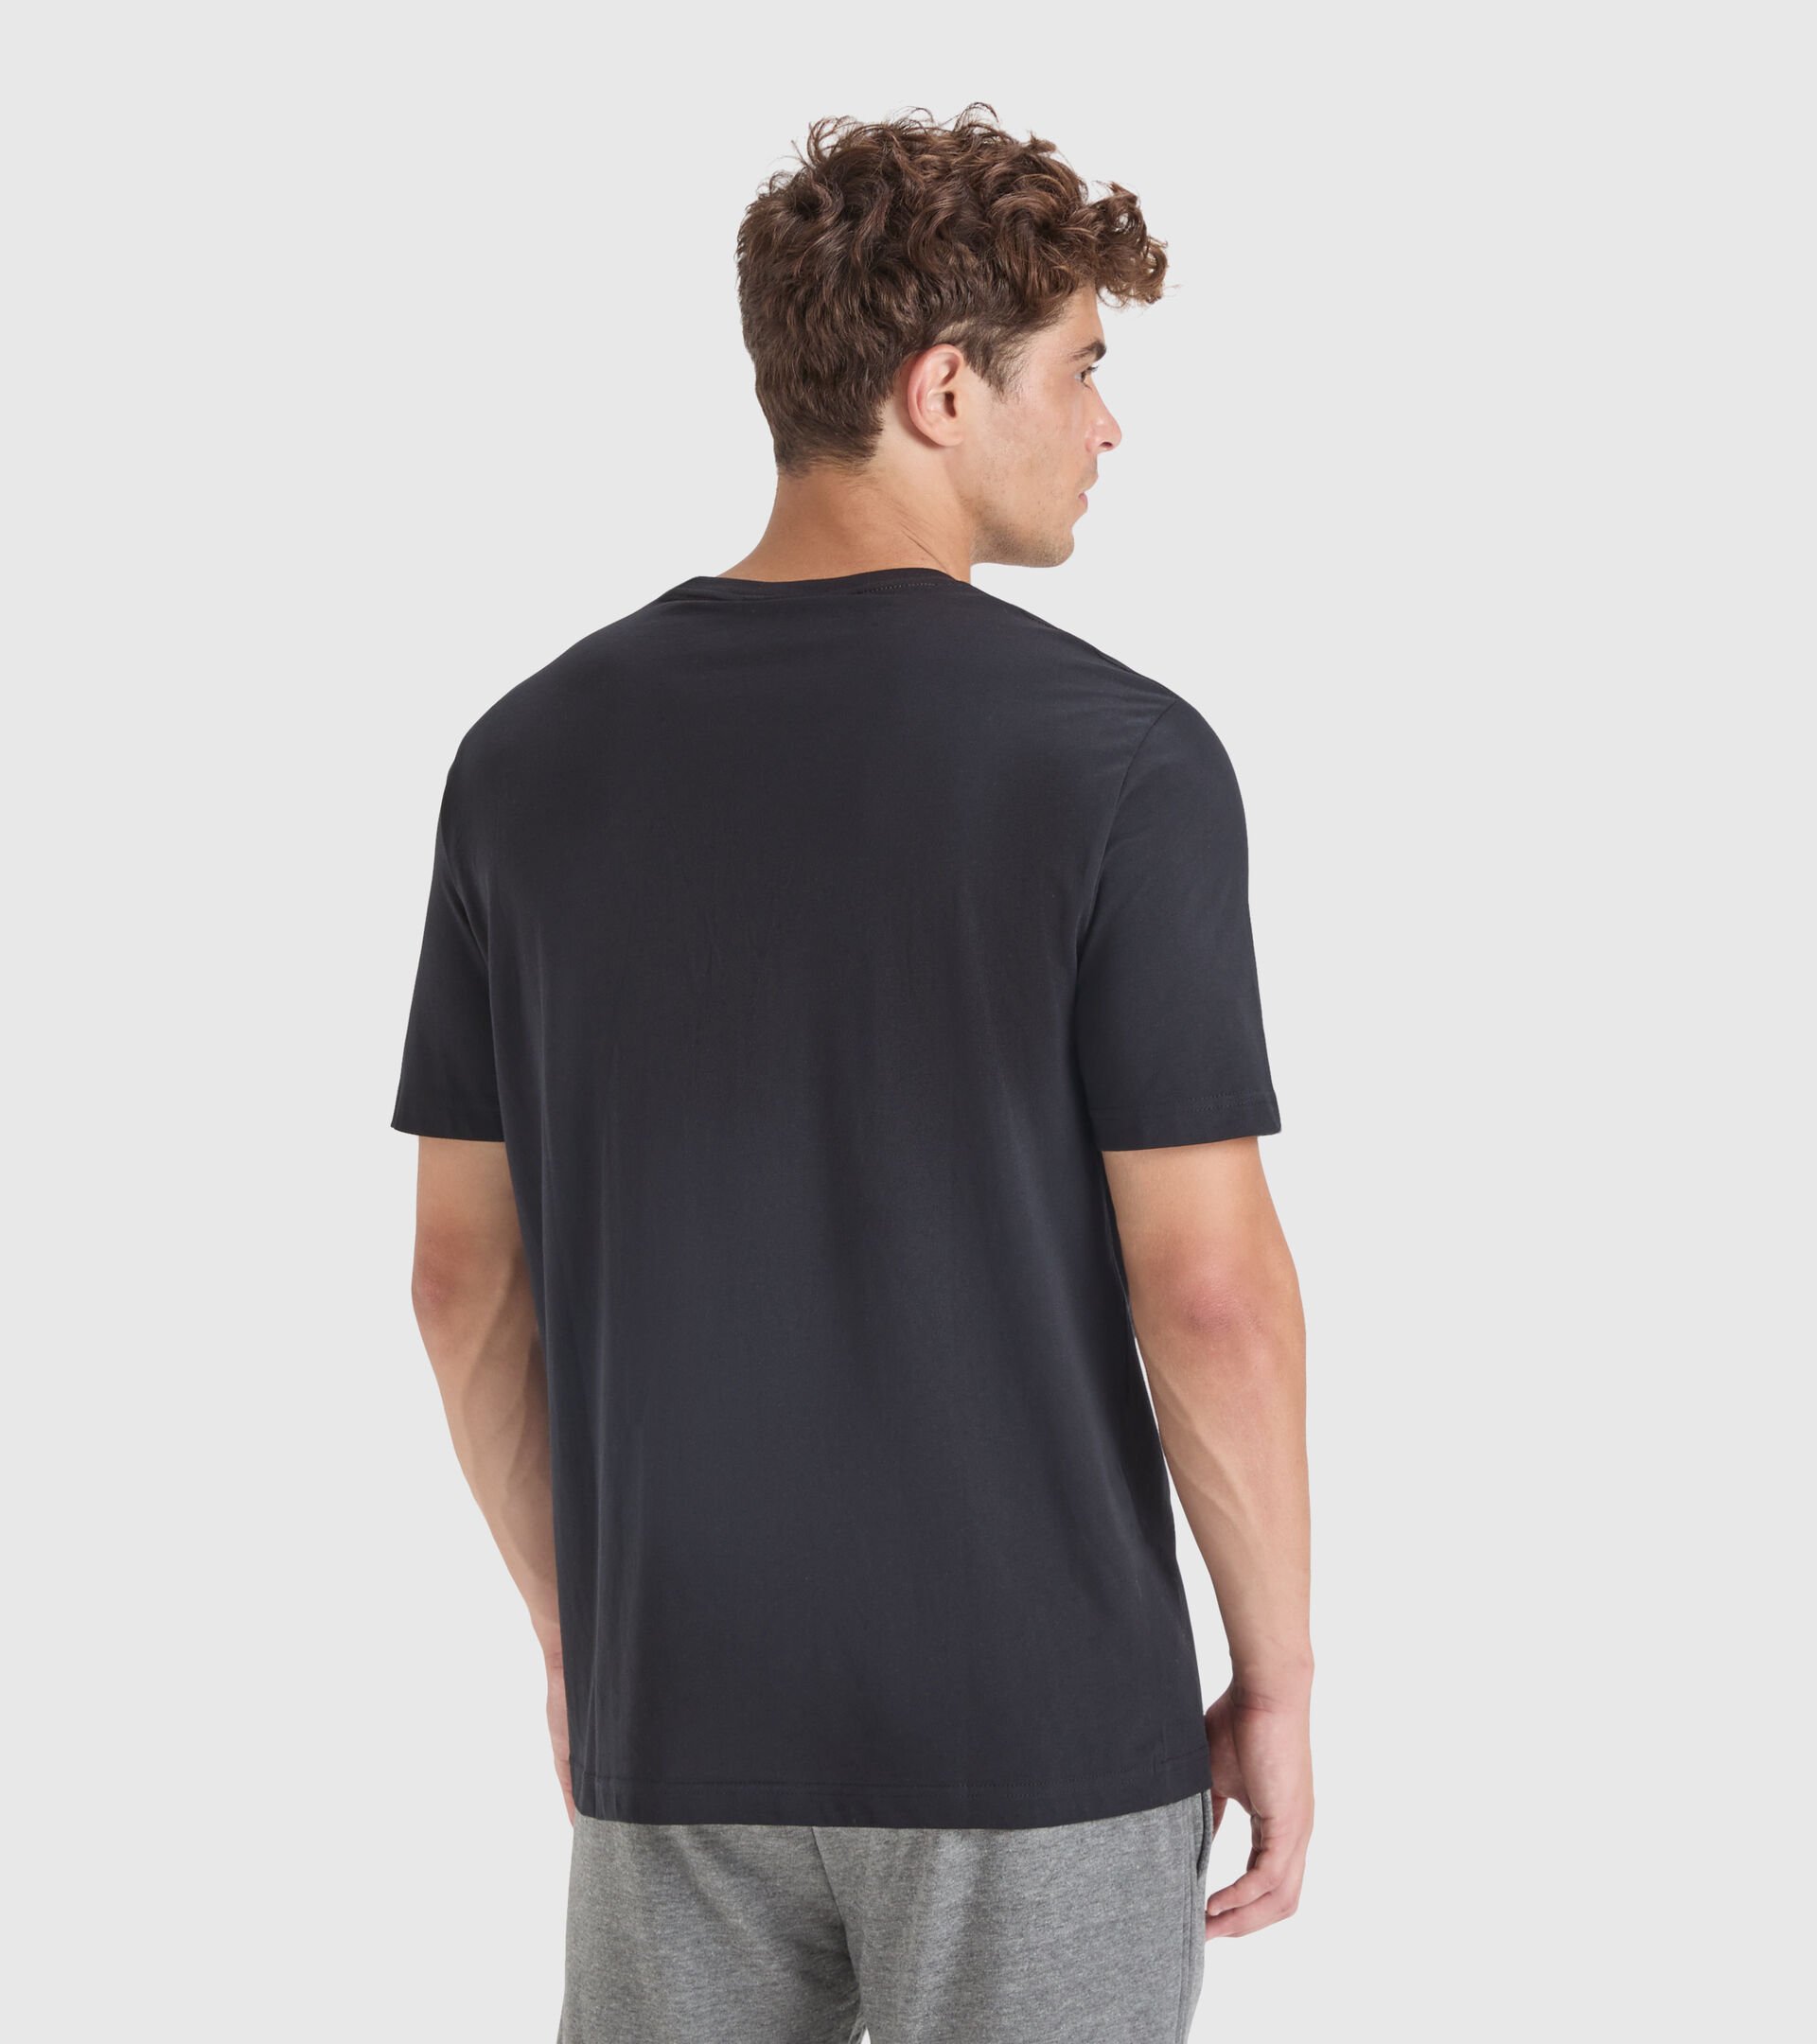 Cotton T-shirt - Men T-SHIRT SS DRIFT BLACK - Diadora